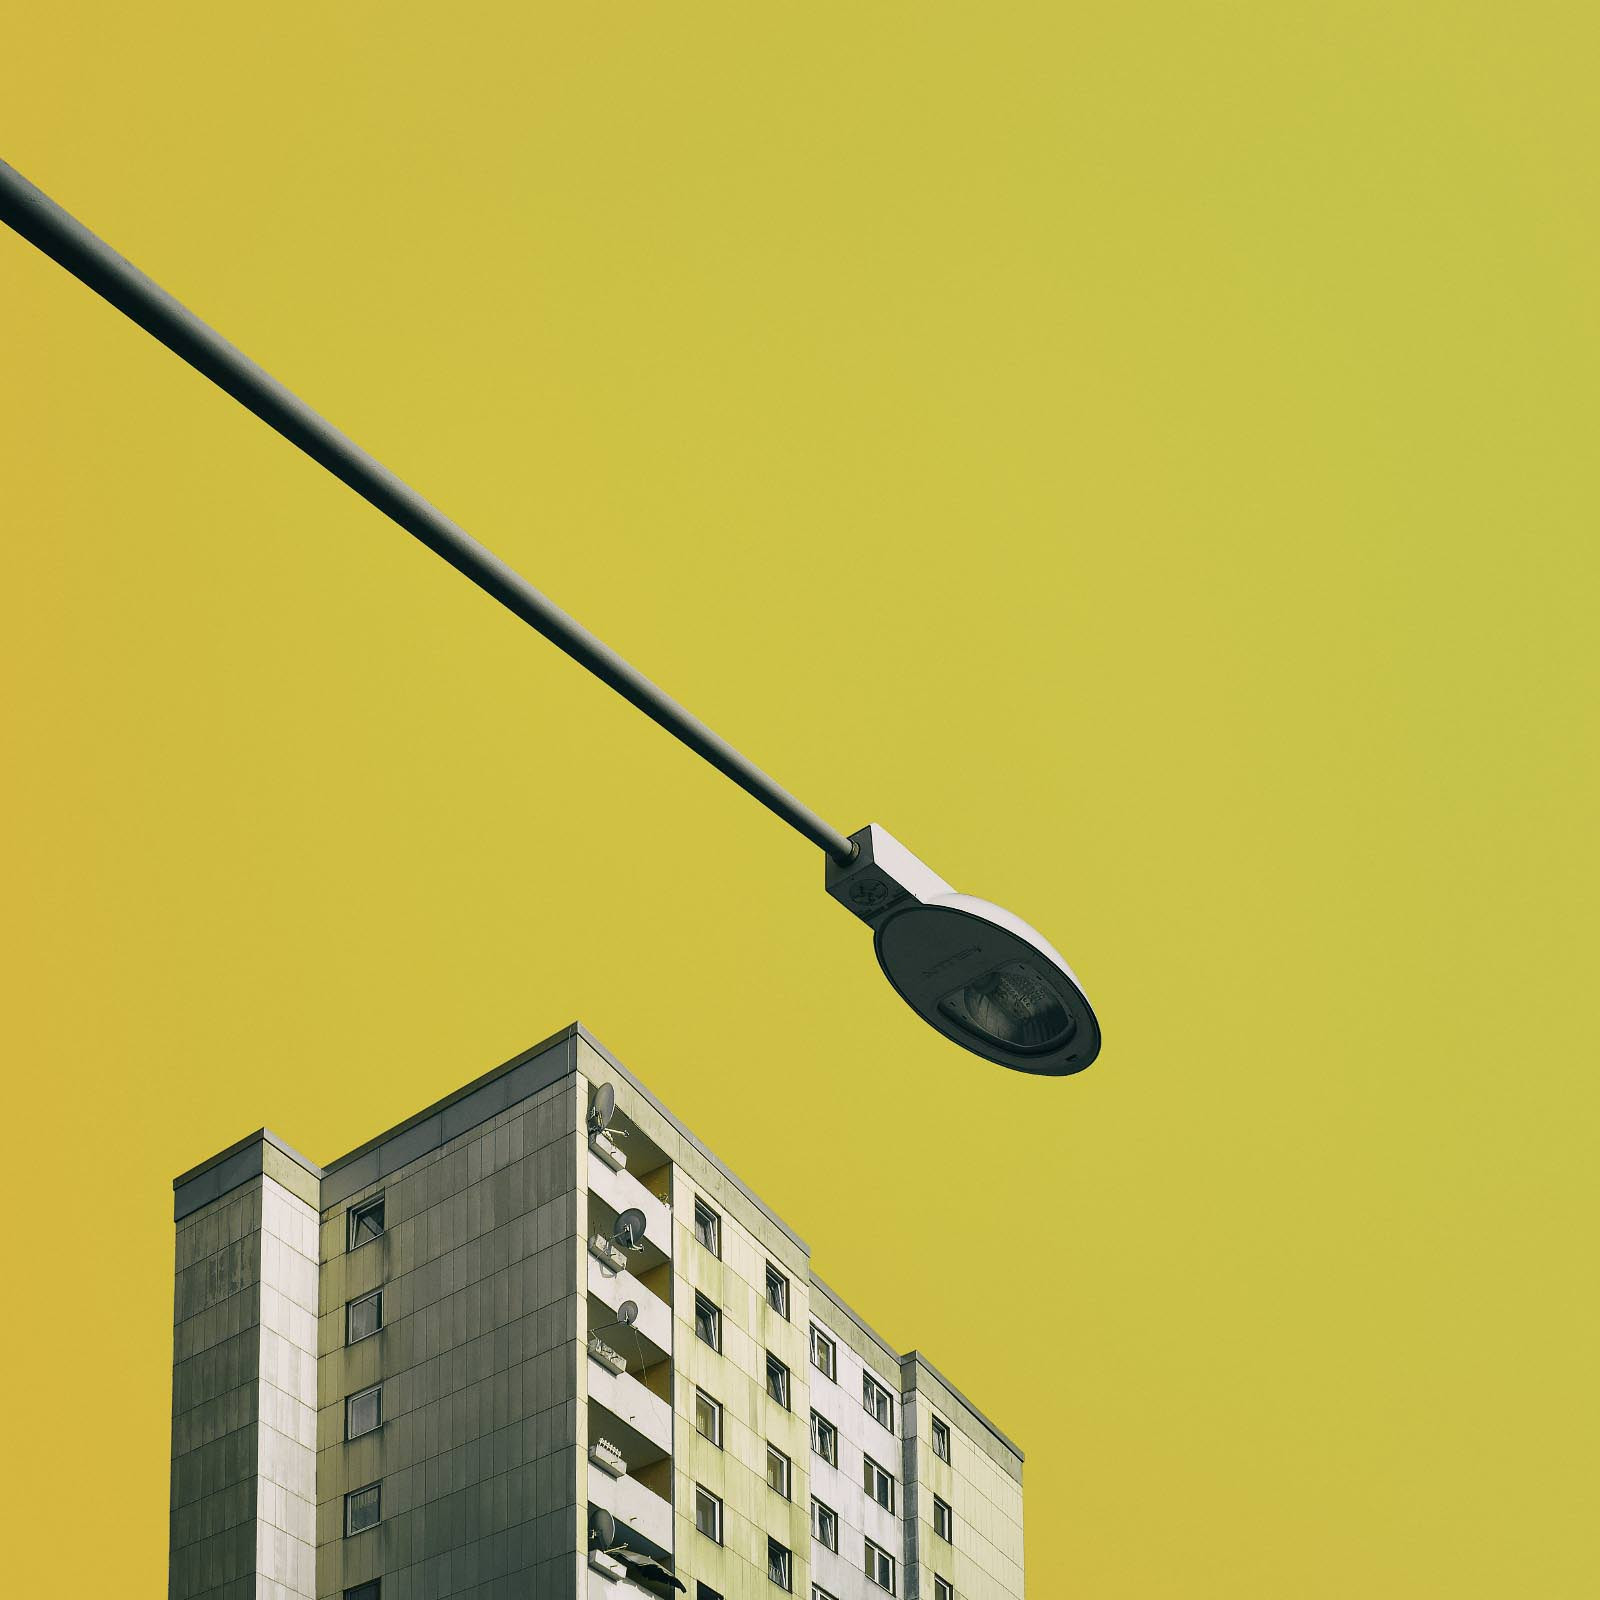 Wohnhaus und Straßenlampe vor gelbem Hintergrund